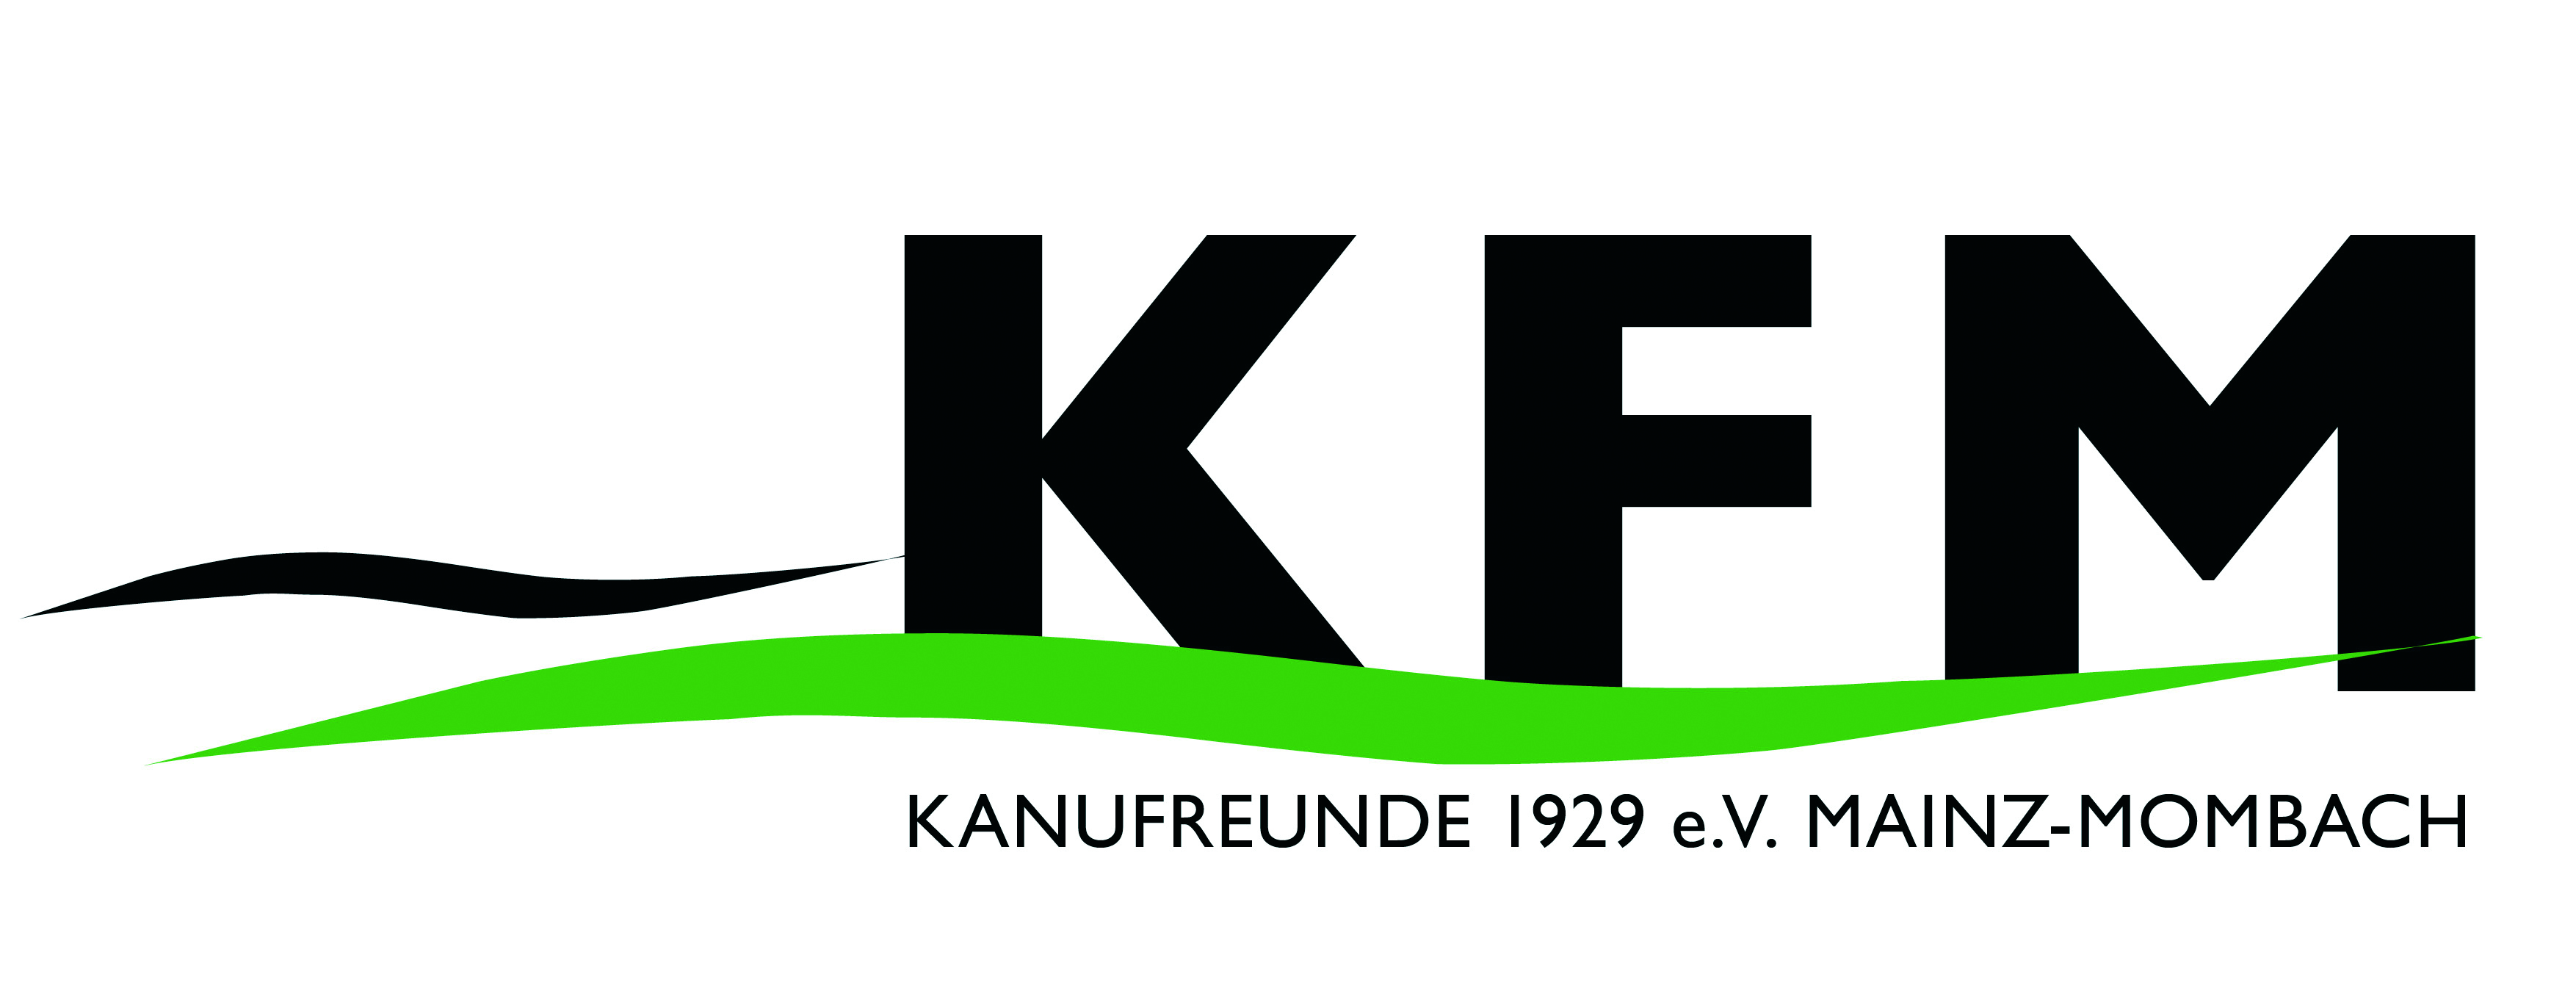 Kanufreunde 1929 e.V. Mainz